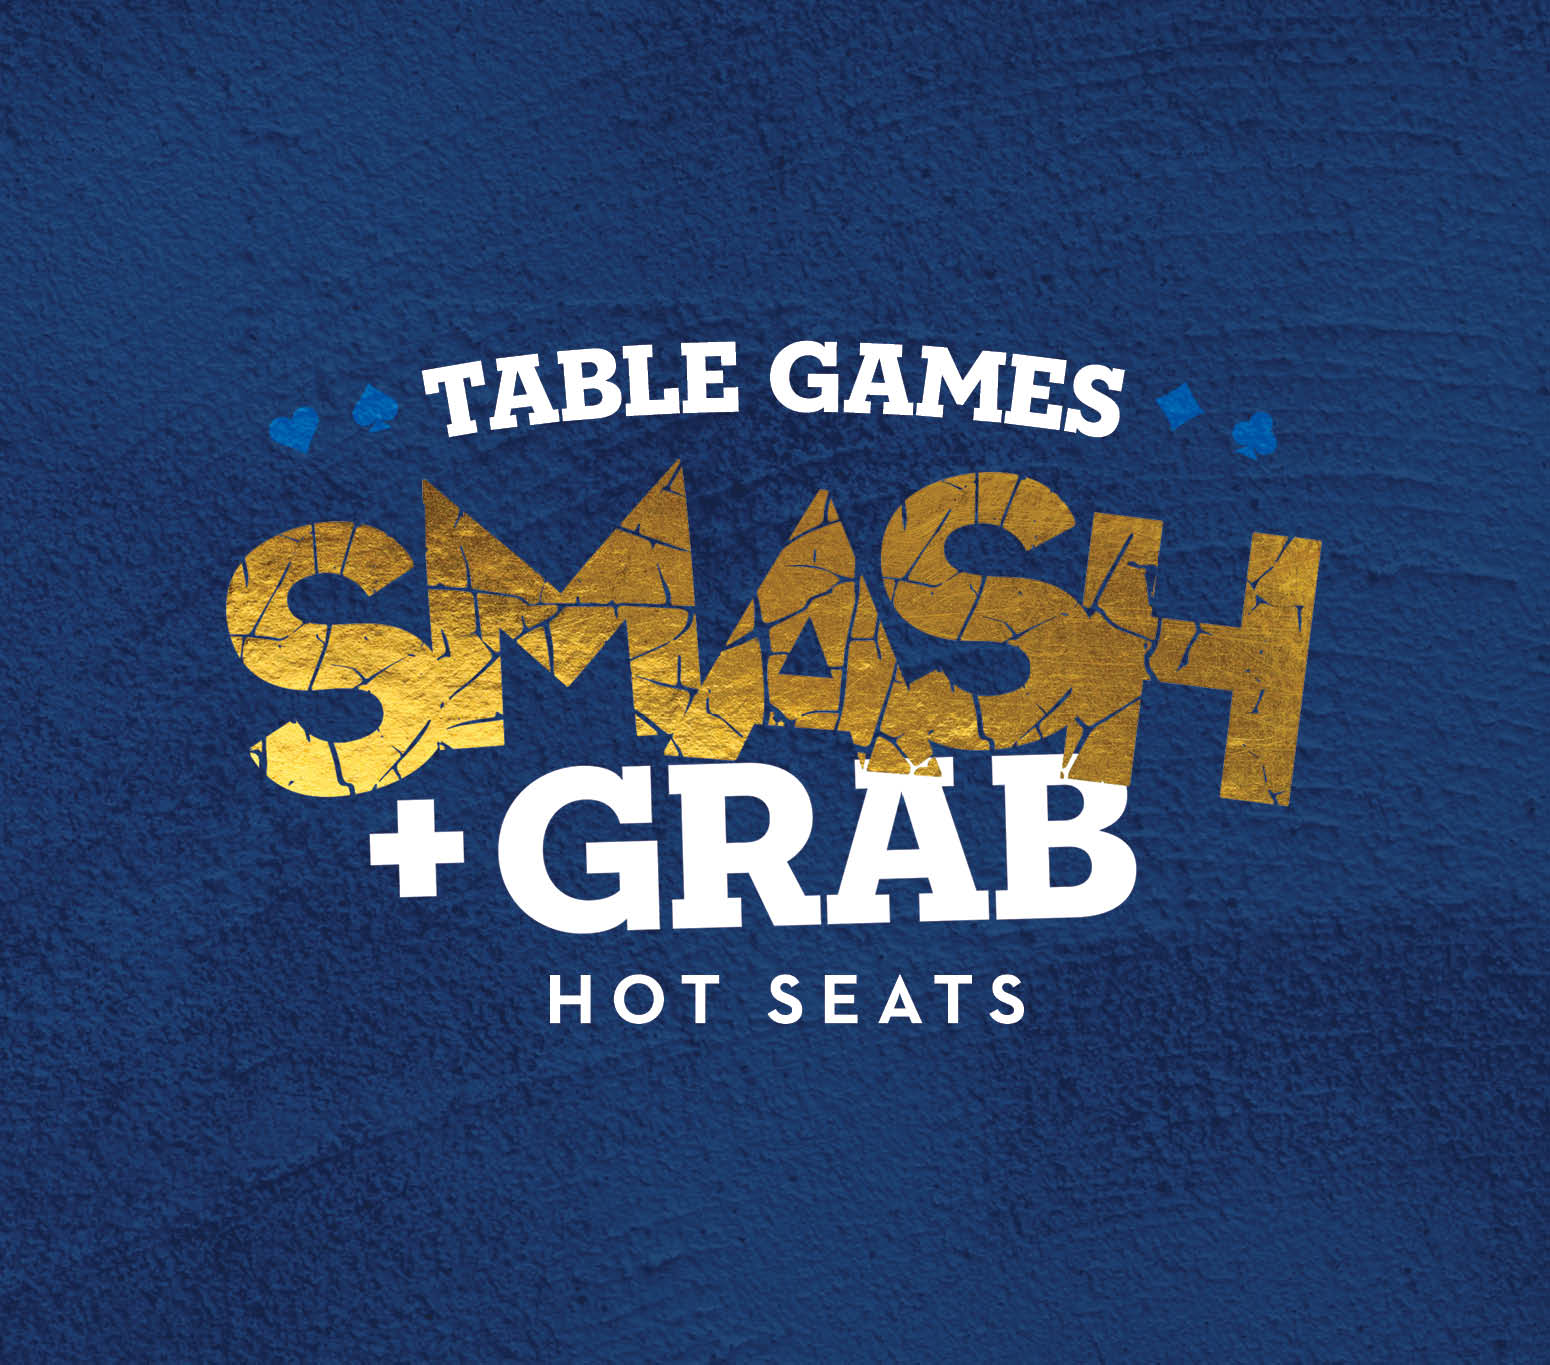 TABLE GAMES SMASH + GRAB HOT SEATS